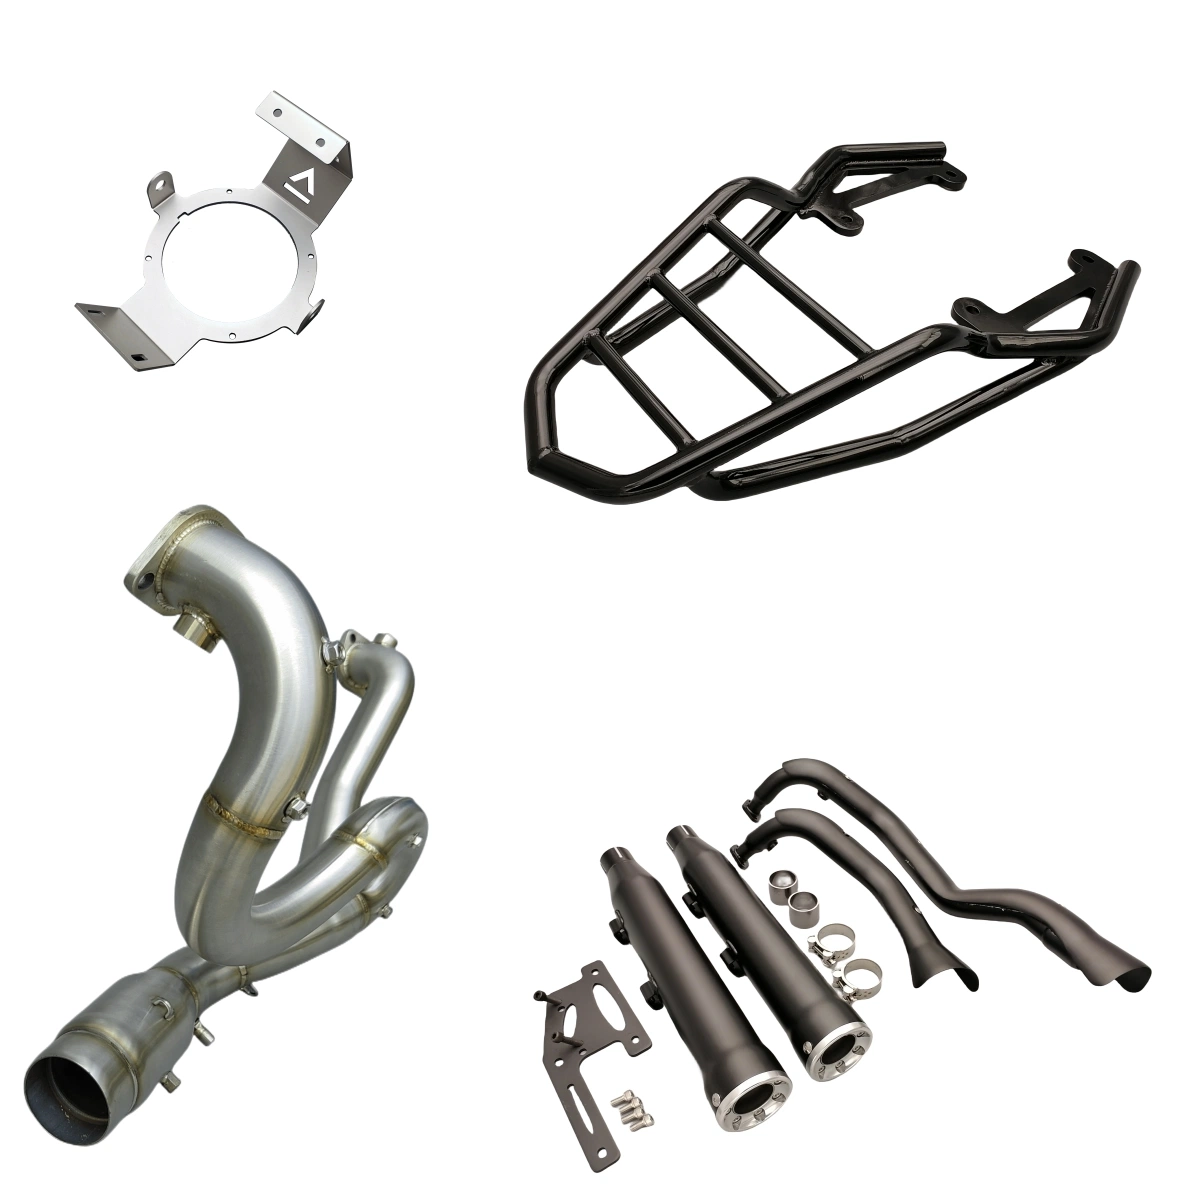 Pièces de moto OEM / Matériel auto personnalisé / Aluminium / Acier inoxydable / Pièces en acier au carbone.